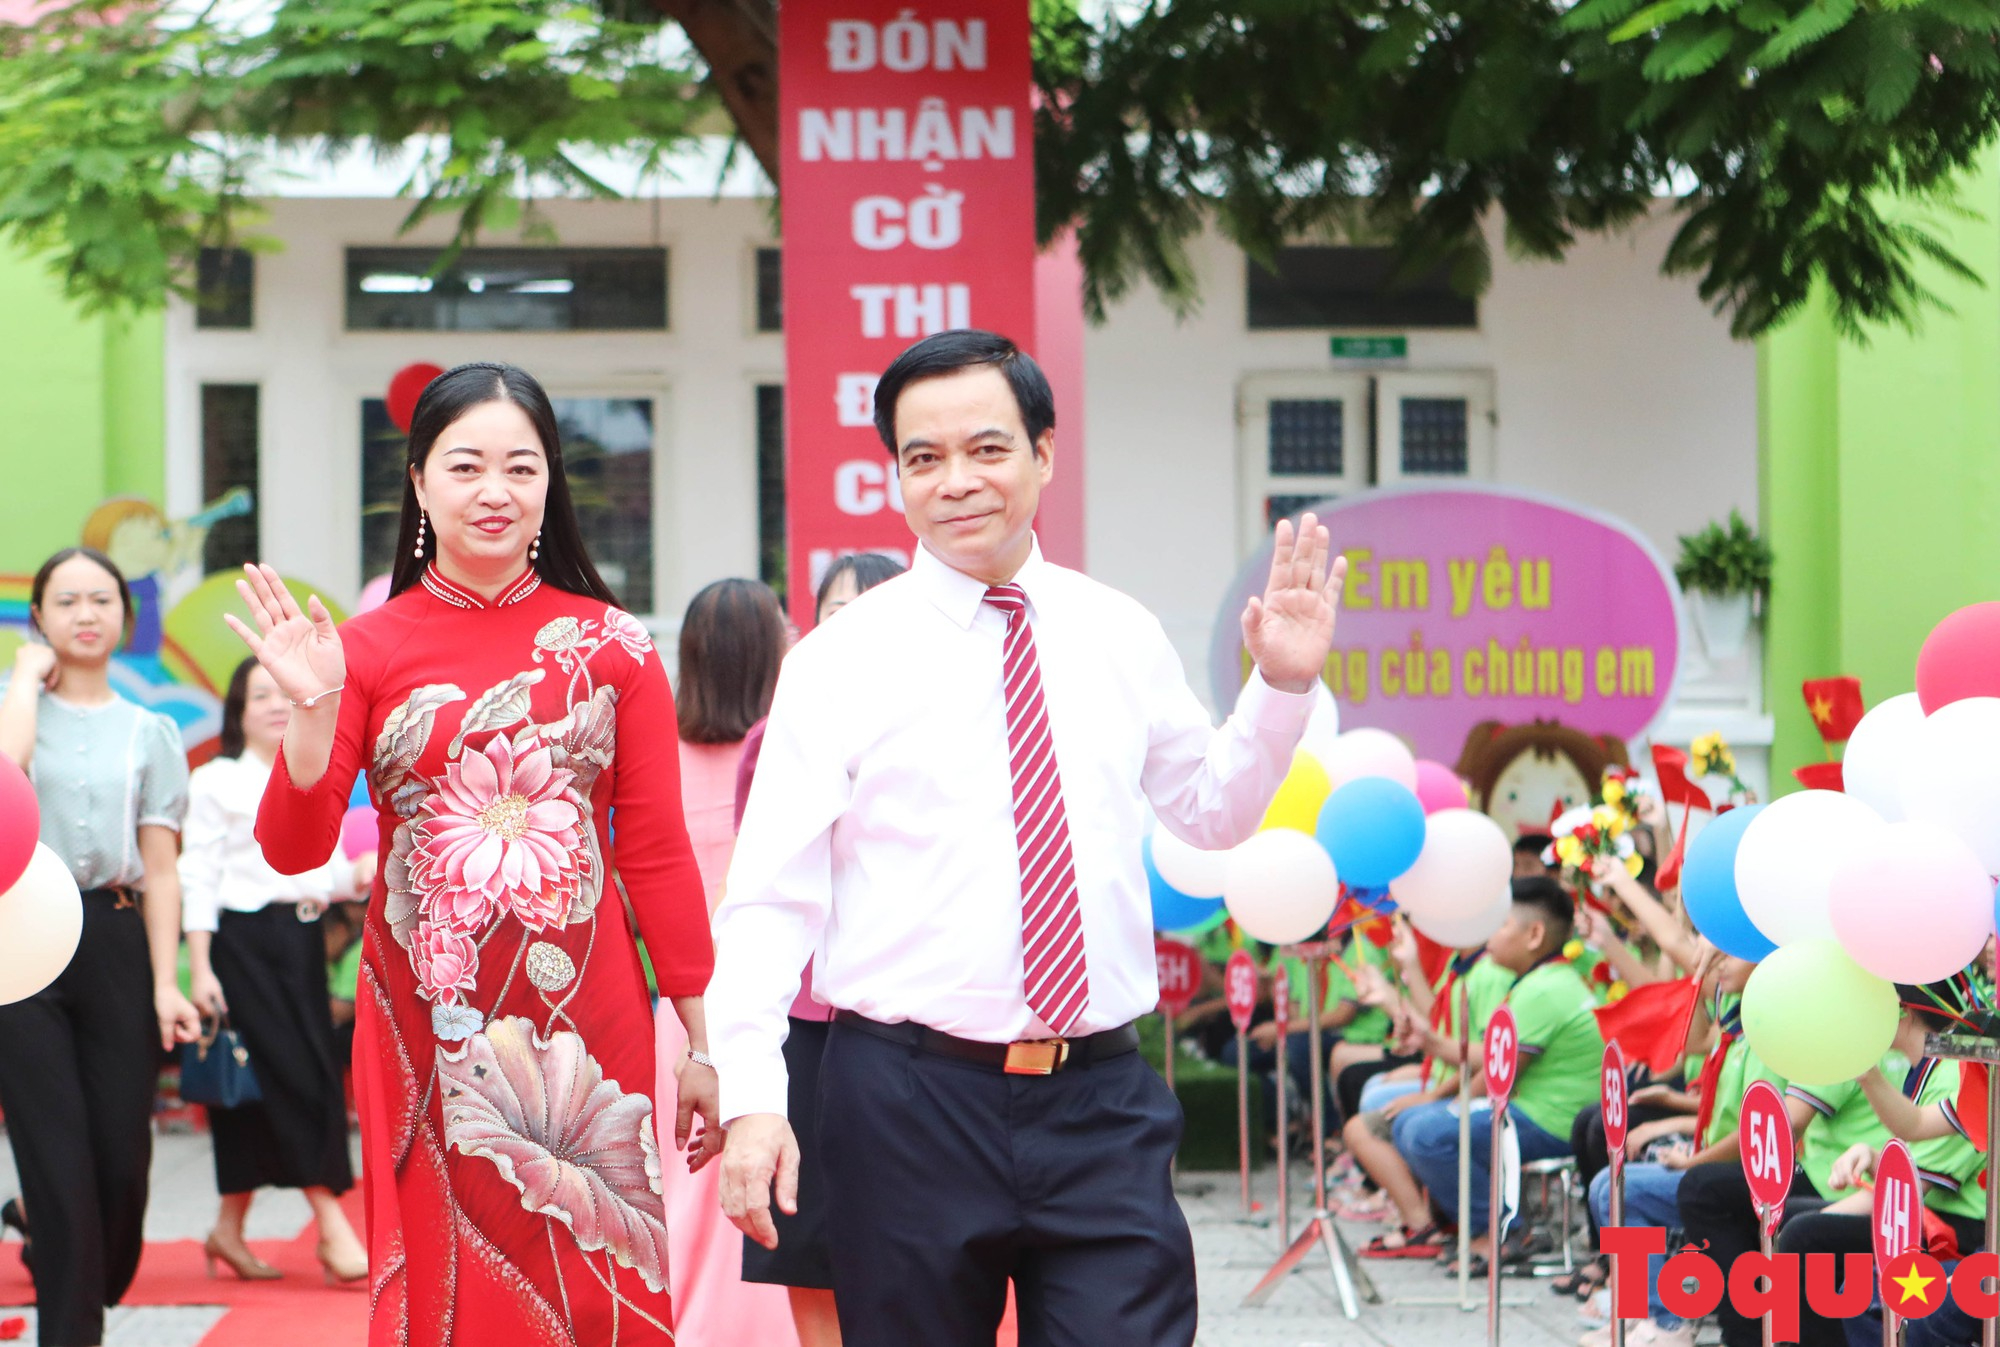 Trường tiểu học Tân Dân khai giảng năm học mới, đón nhận Cờ thi đua của UBND tỉnh Phú Thọ - Ảnh 2.